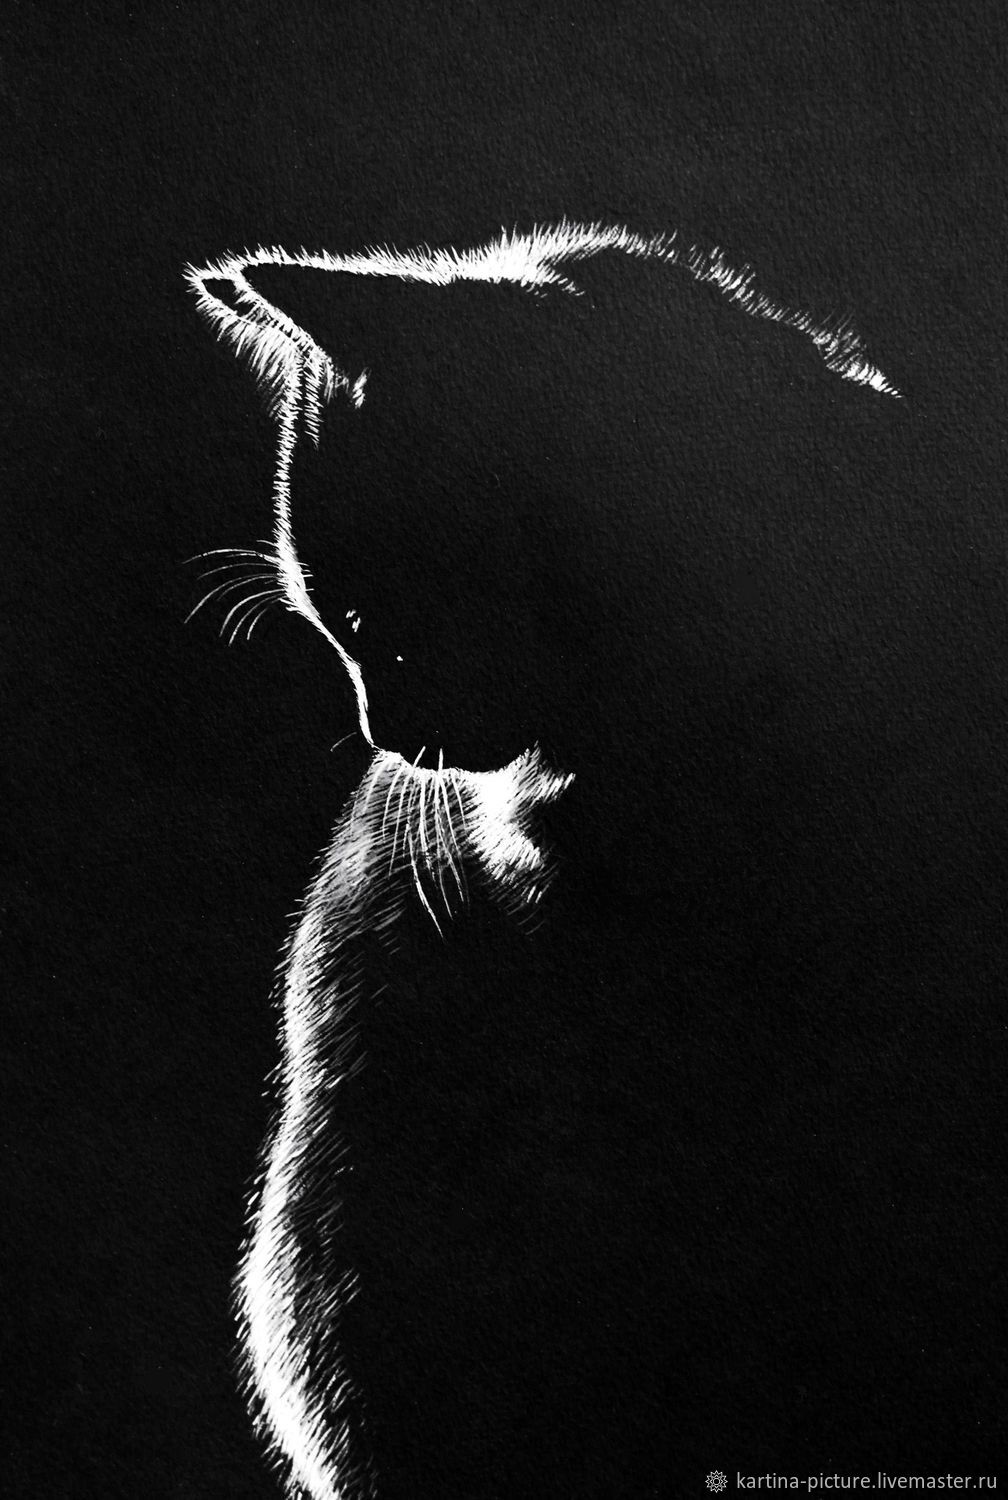  Картина Черная кошечка, Картины, Самара,  Фото №1